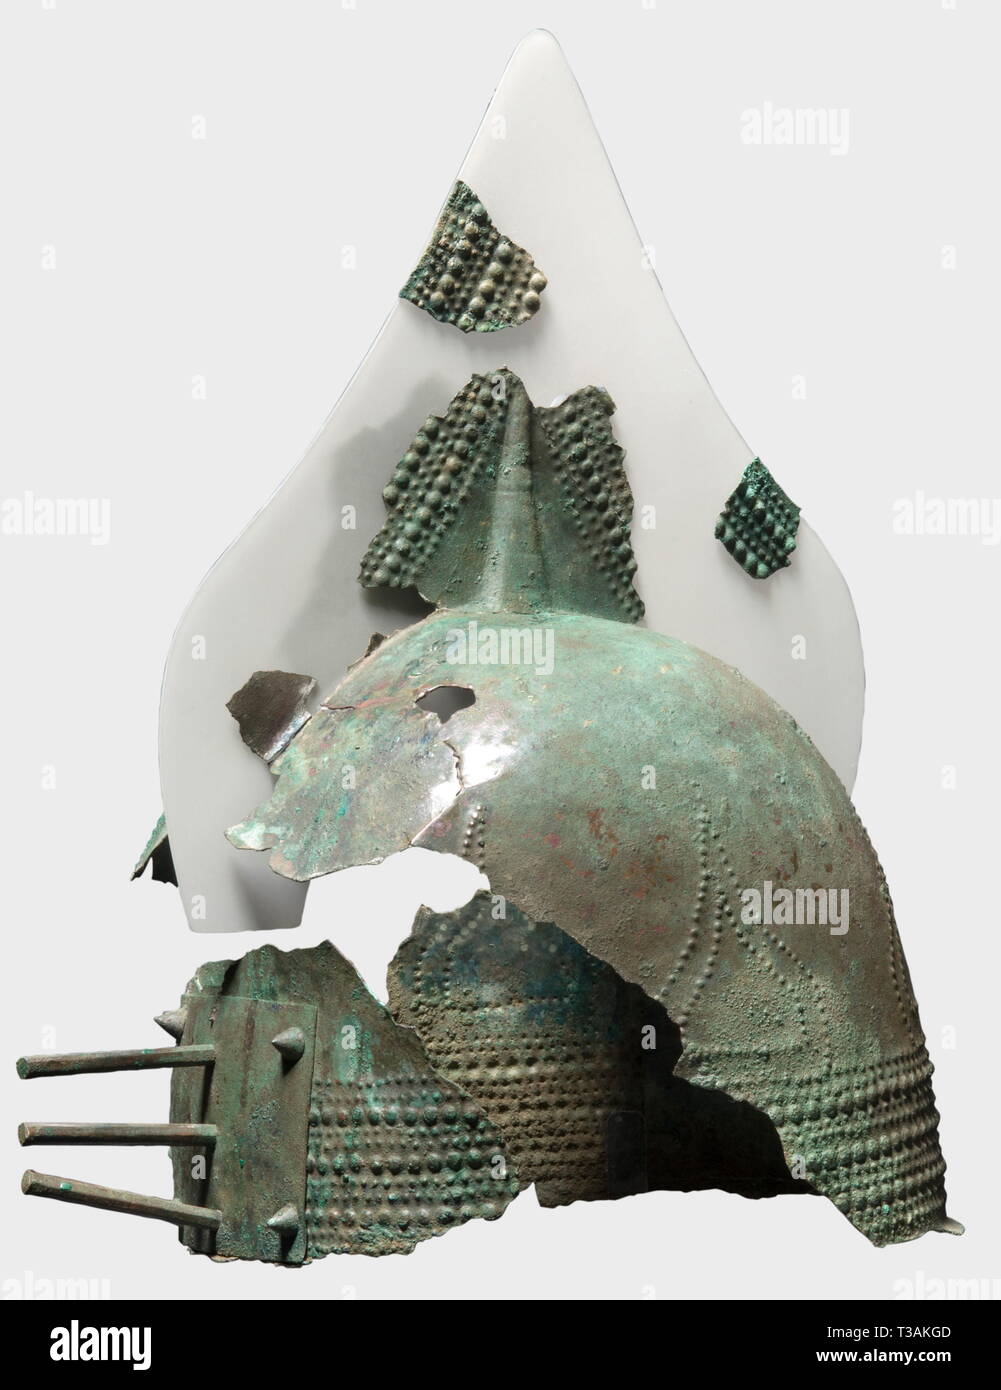 Armaduras, Cascos, yelmo crestado etrusco, a comienzos de la edad de hierro, siglo VIII A.C. Additional-Rights-Clearance-Info-Not-Available Foto de stock